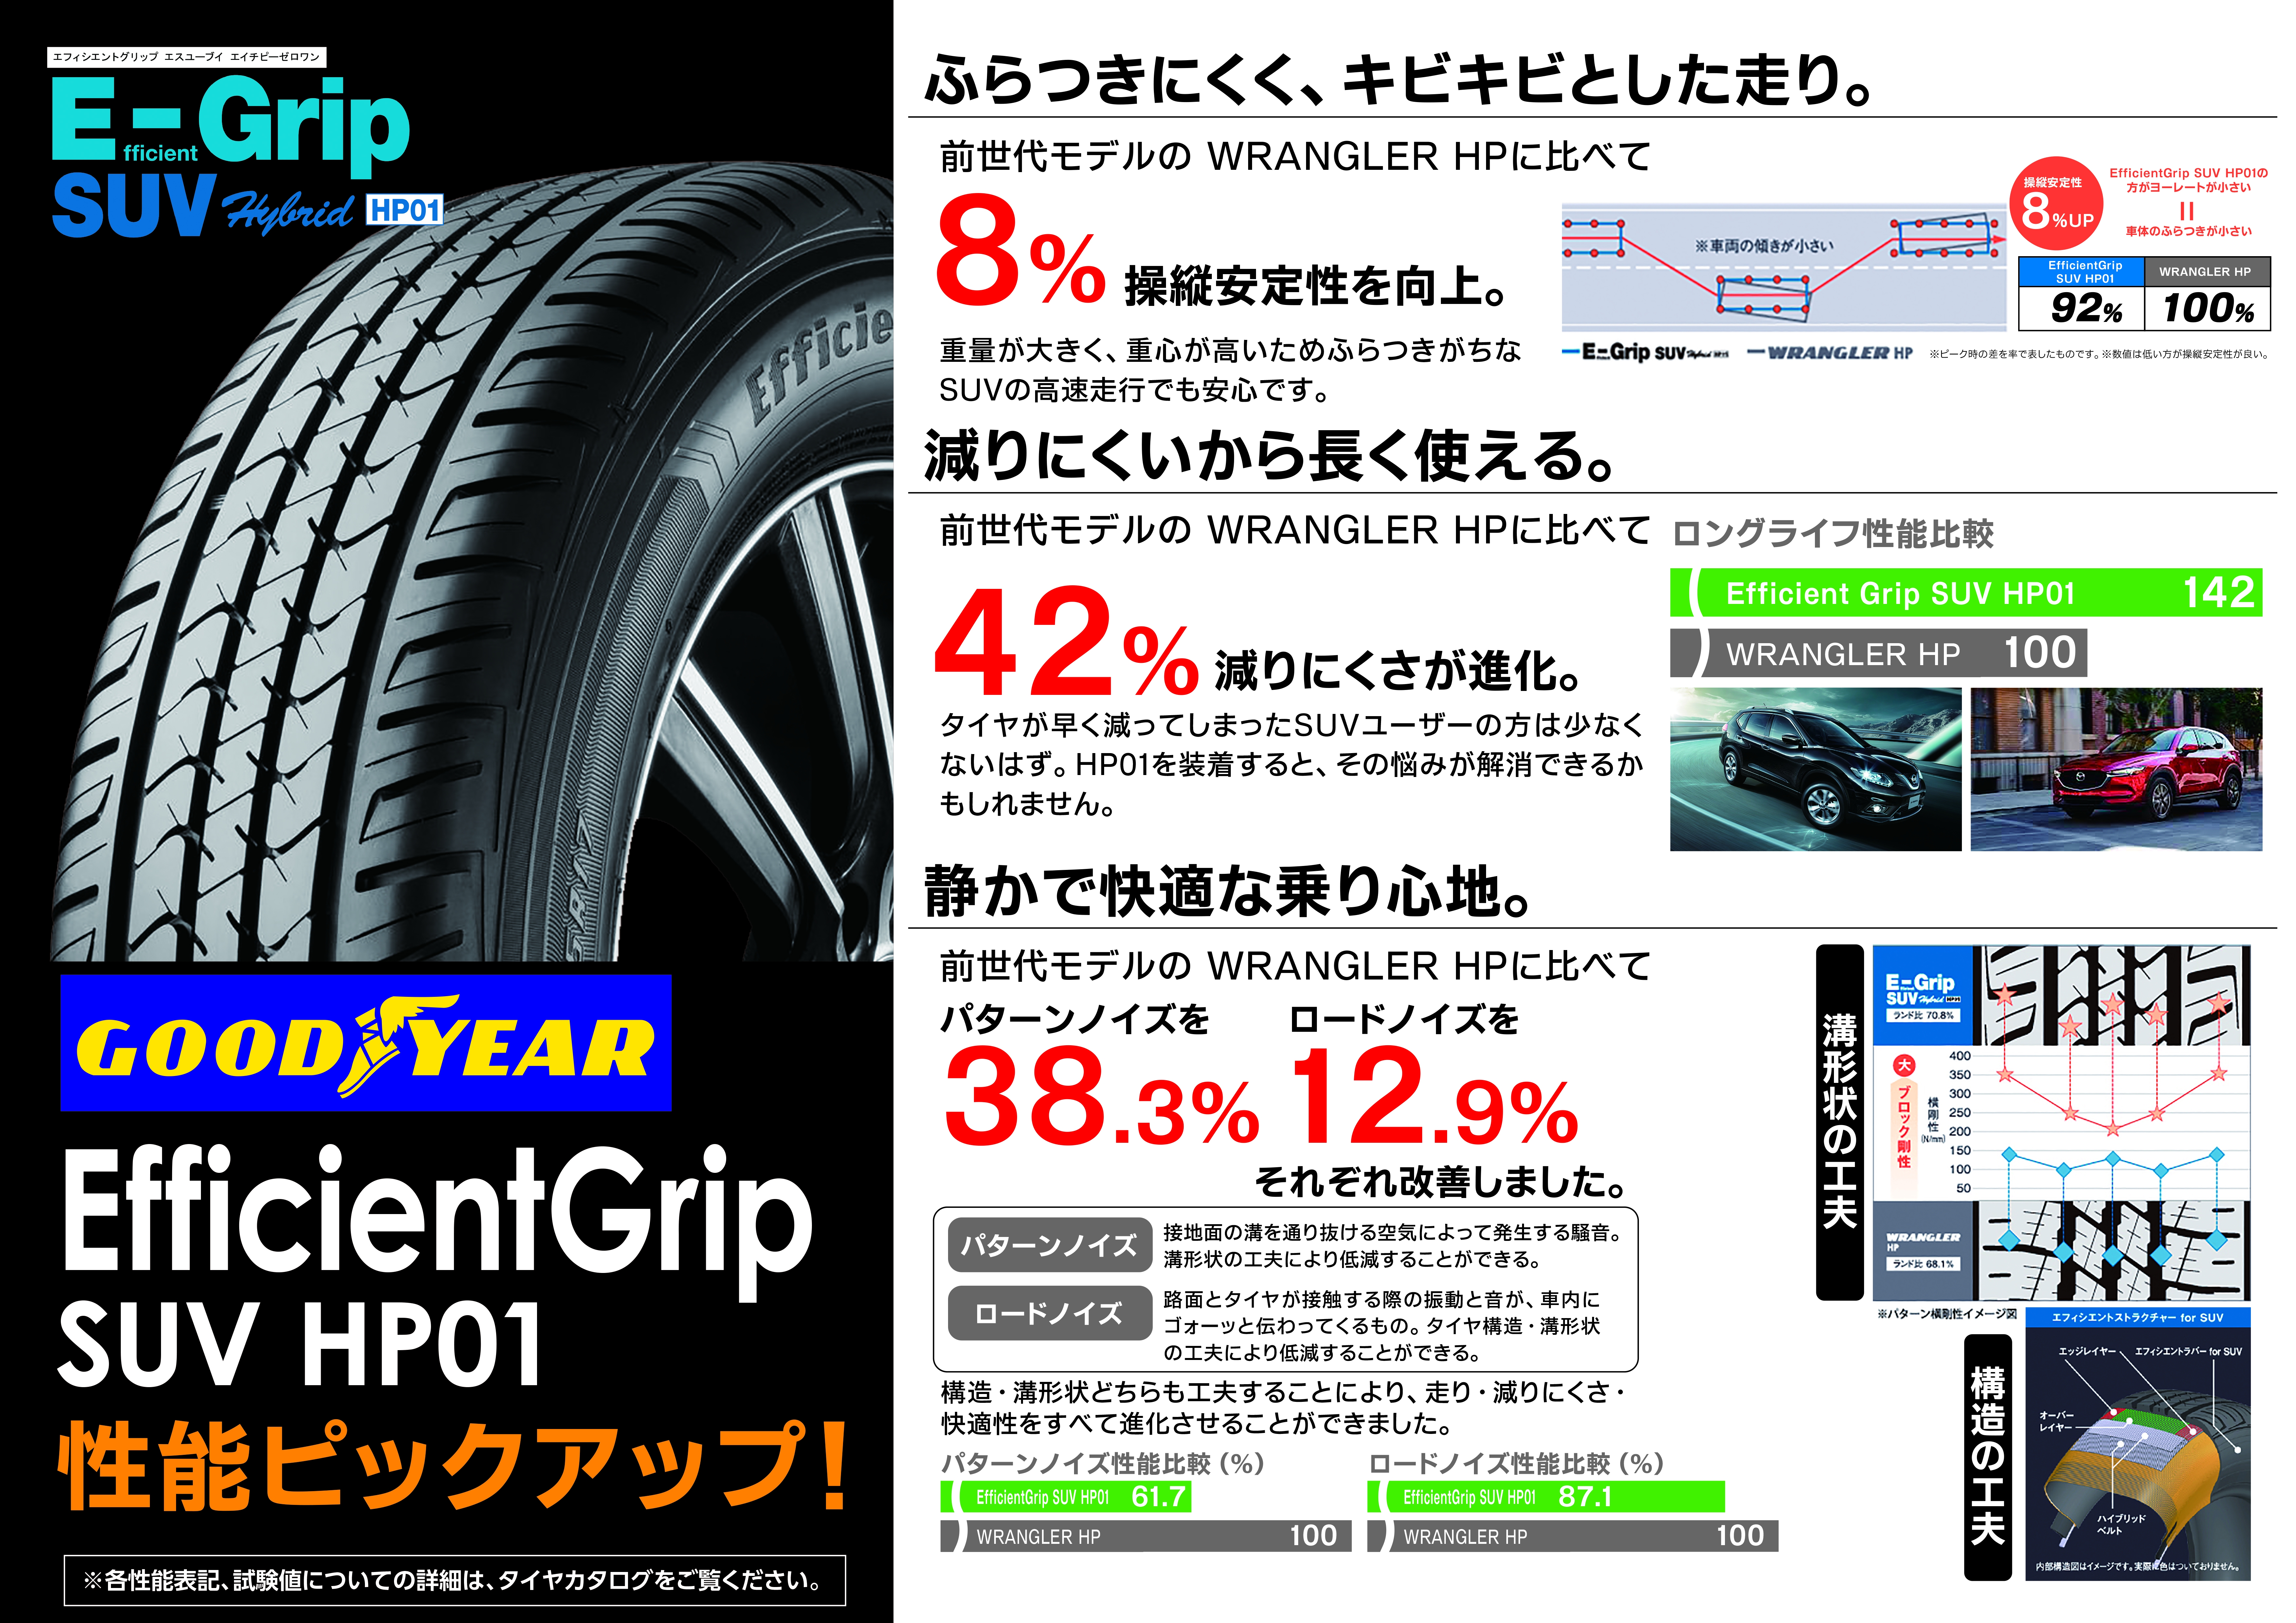 GY_E_Grip SUV HP01.jpg